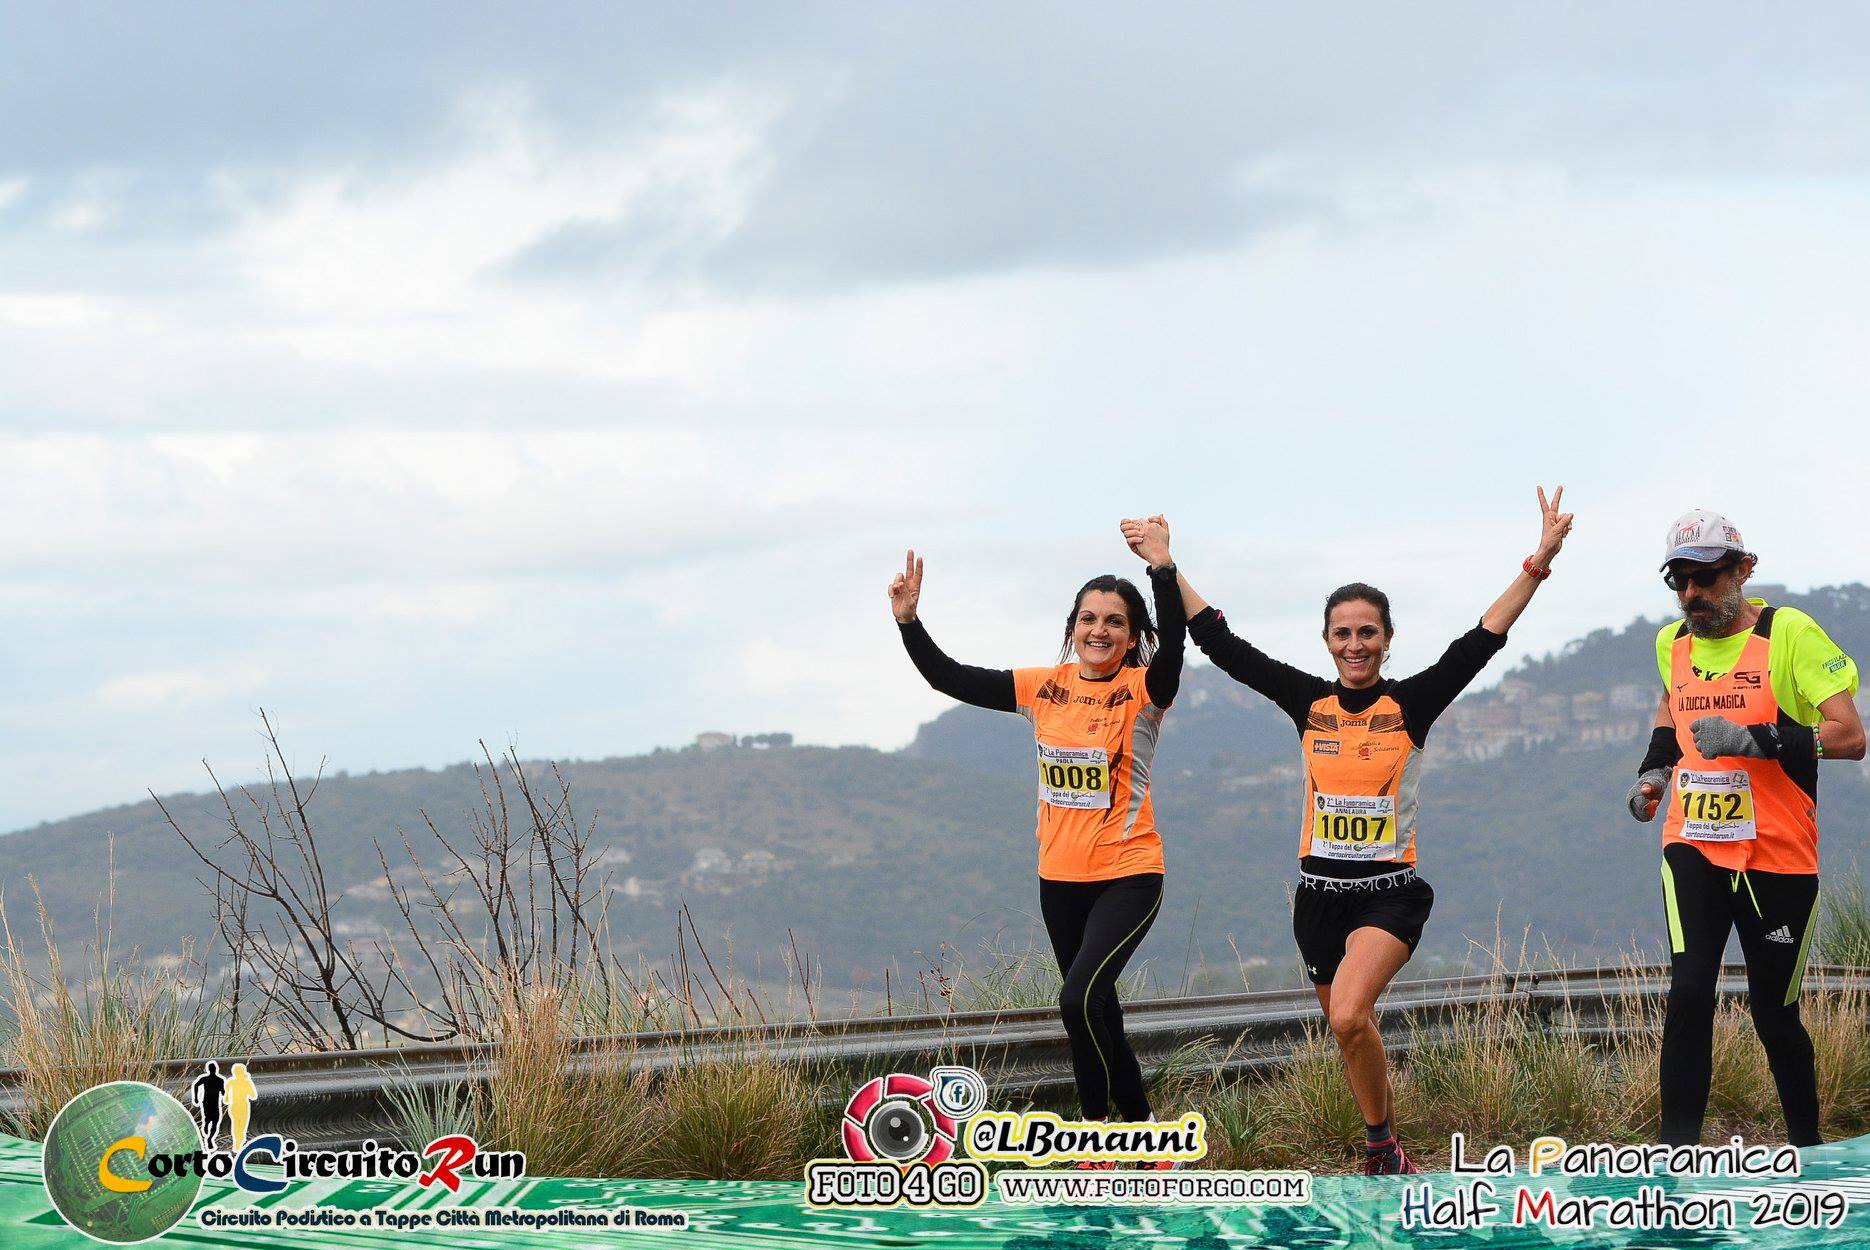 Panoramica 10km vincono Igor Cepraga e Paola Patta /Anna Laura Bravetti